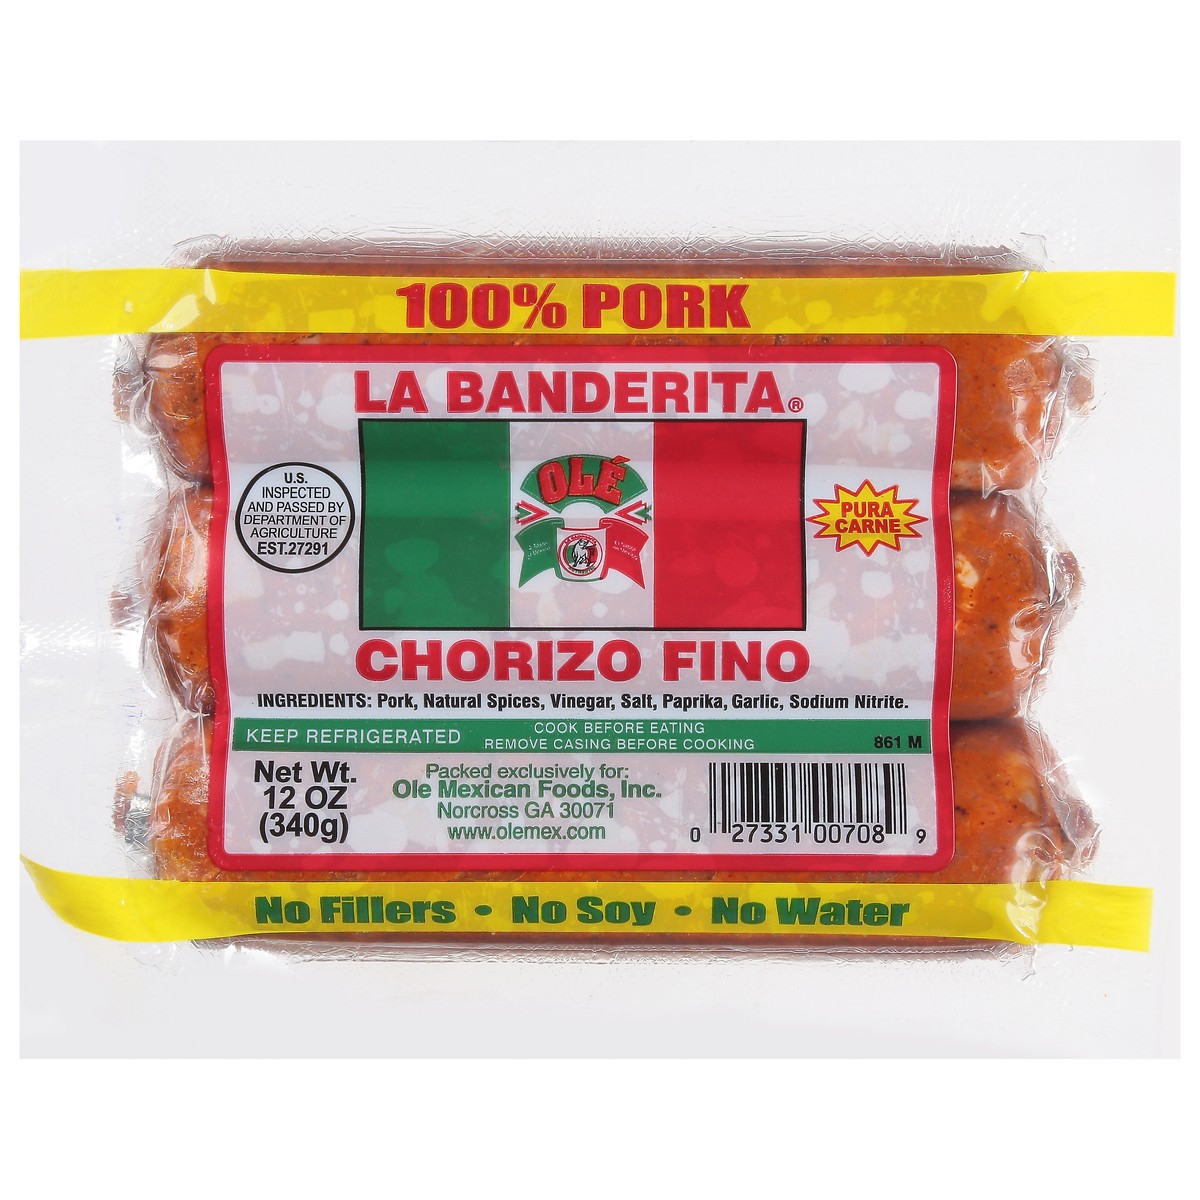 slide 1 of 5, La Banderita 100% Pork Chorizo Fino 12 oz, 12 oz